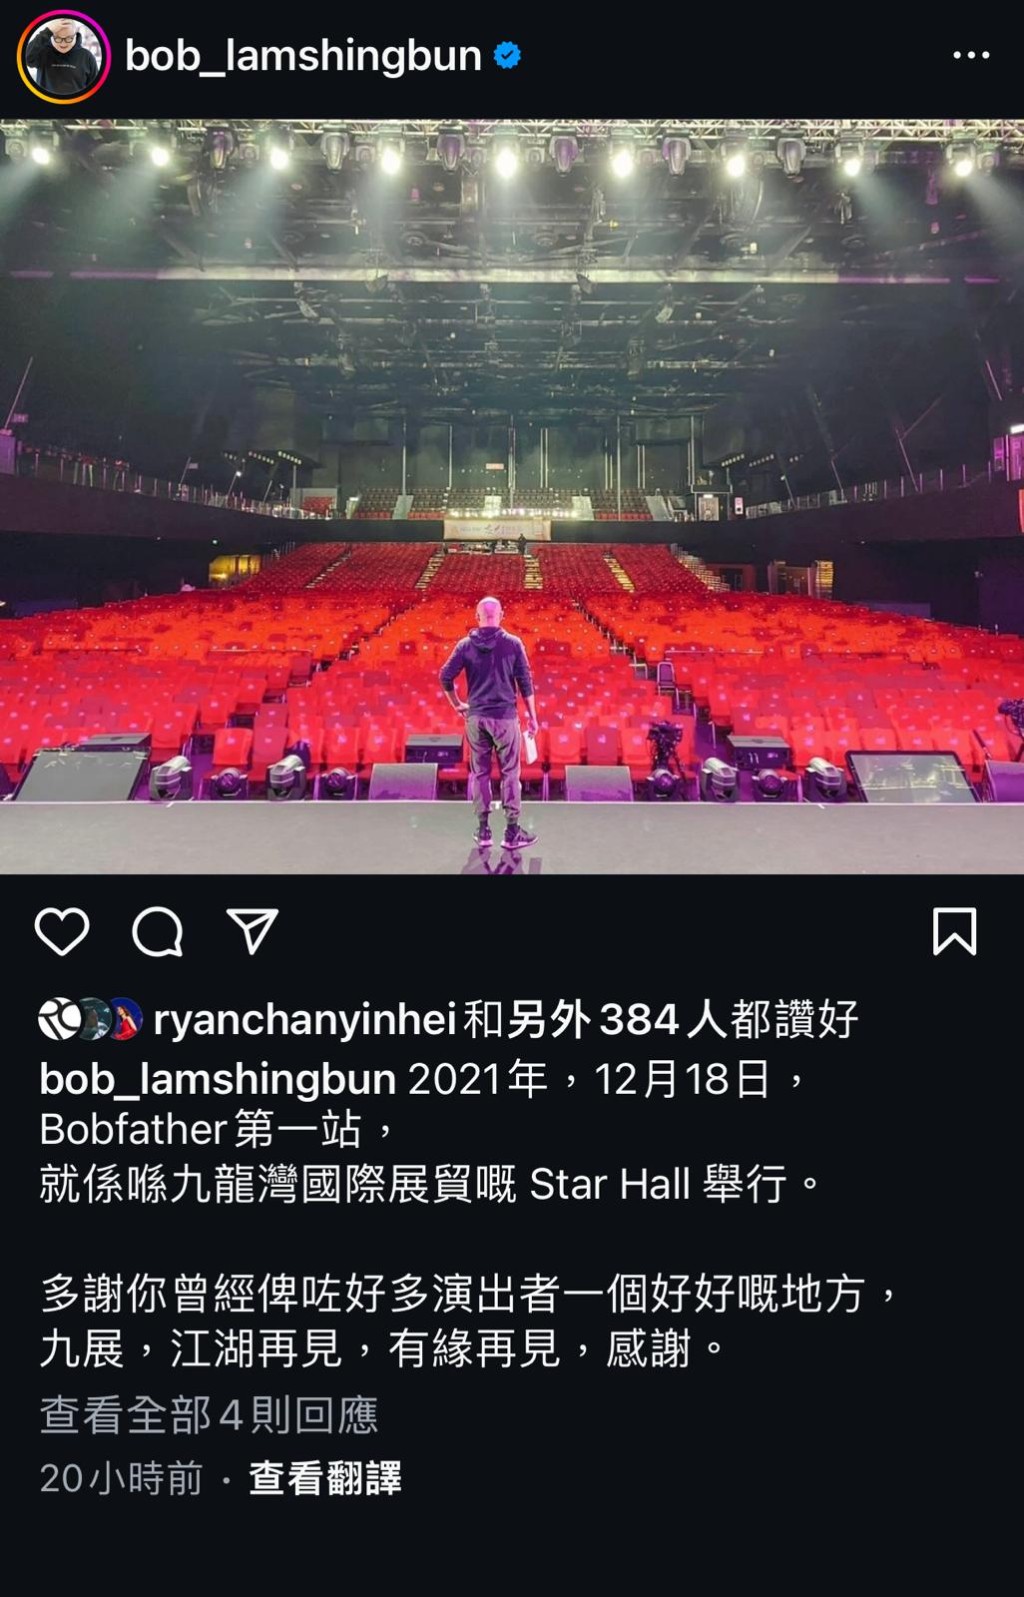 林盛斌曾在2021年12月于Star Hall 举行《Bobfather》第一站。